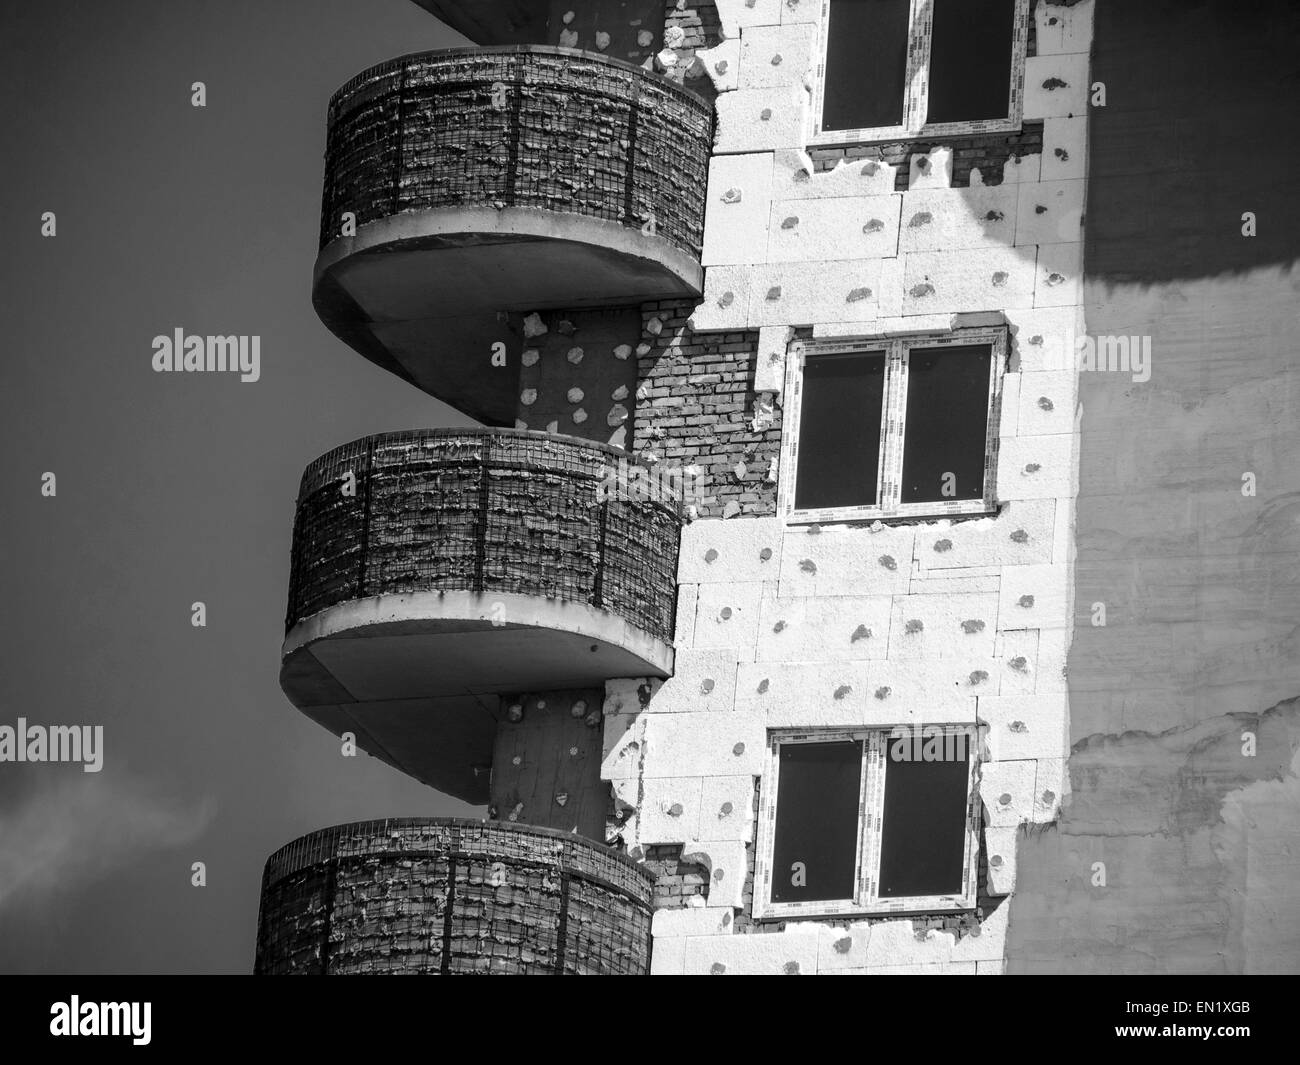 24 avril 2015 - isolation thermique d'un immeuble à appartements décoratifs en polyuréthane (crédit Image : © Zuma sur le fil) Banque D'Images